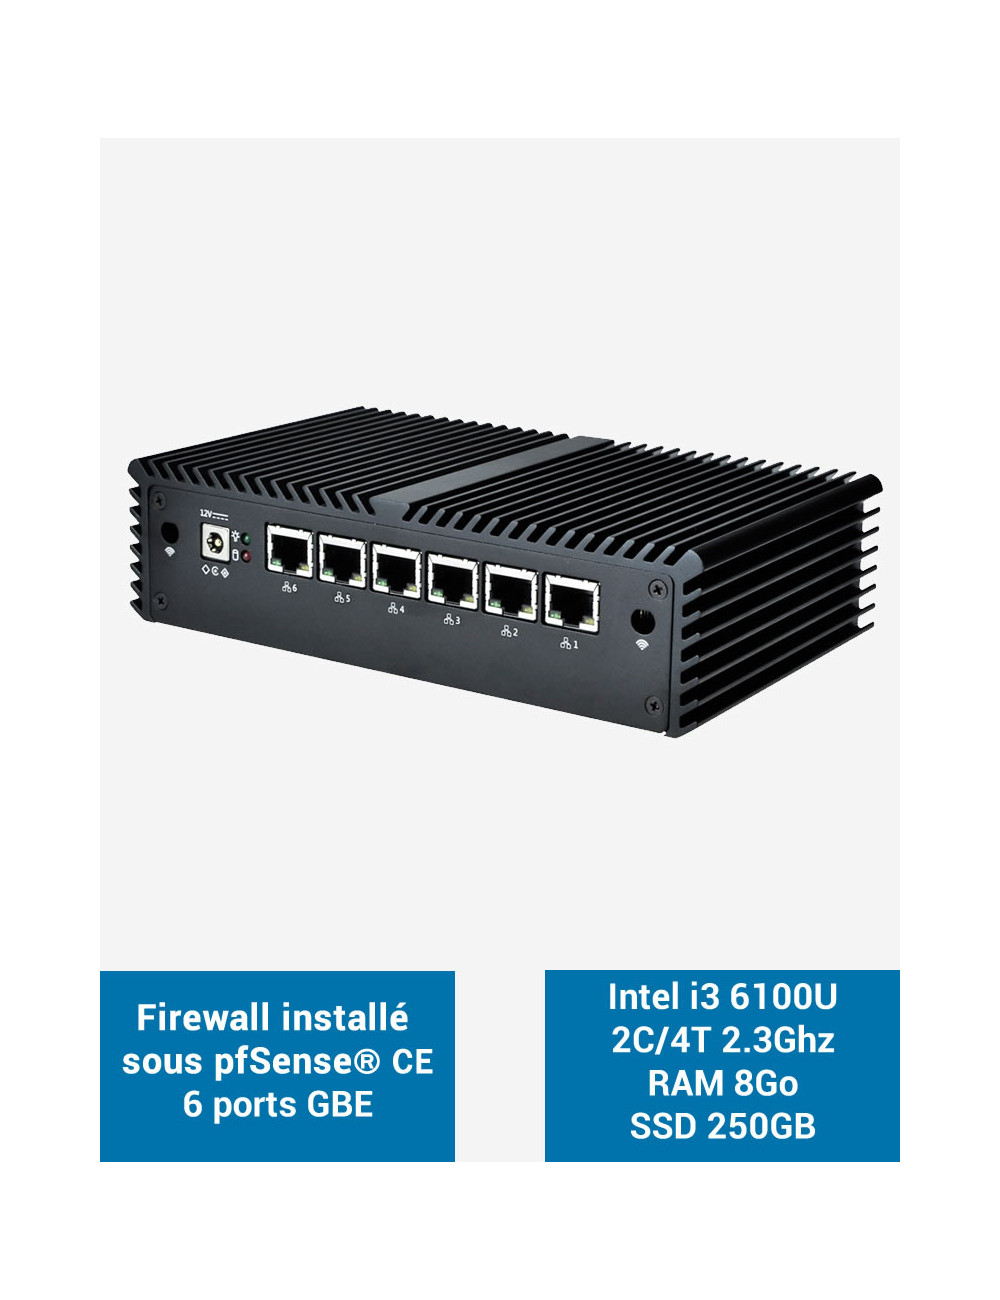 Firewall pfSense® Q5x Intel i3 6100U 6 puertos Gigabit 8GB SSD 250GB